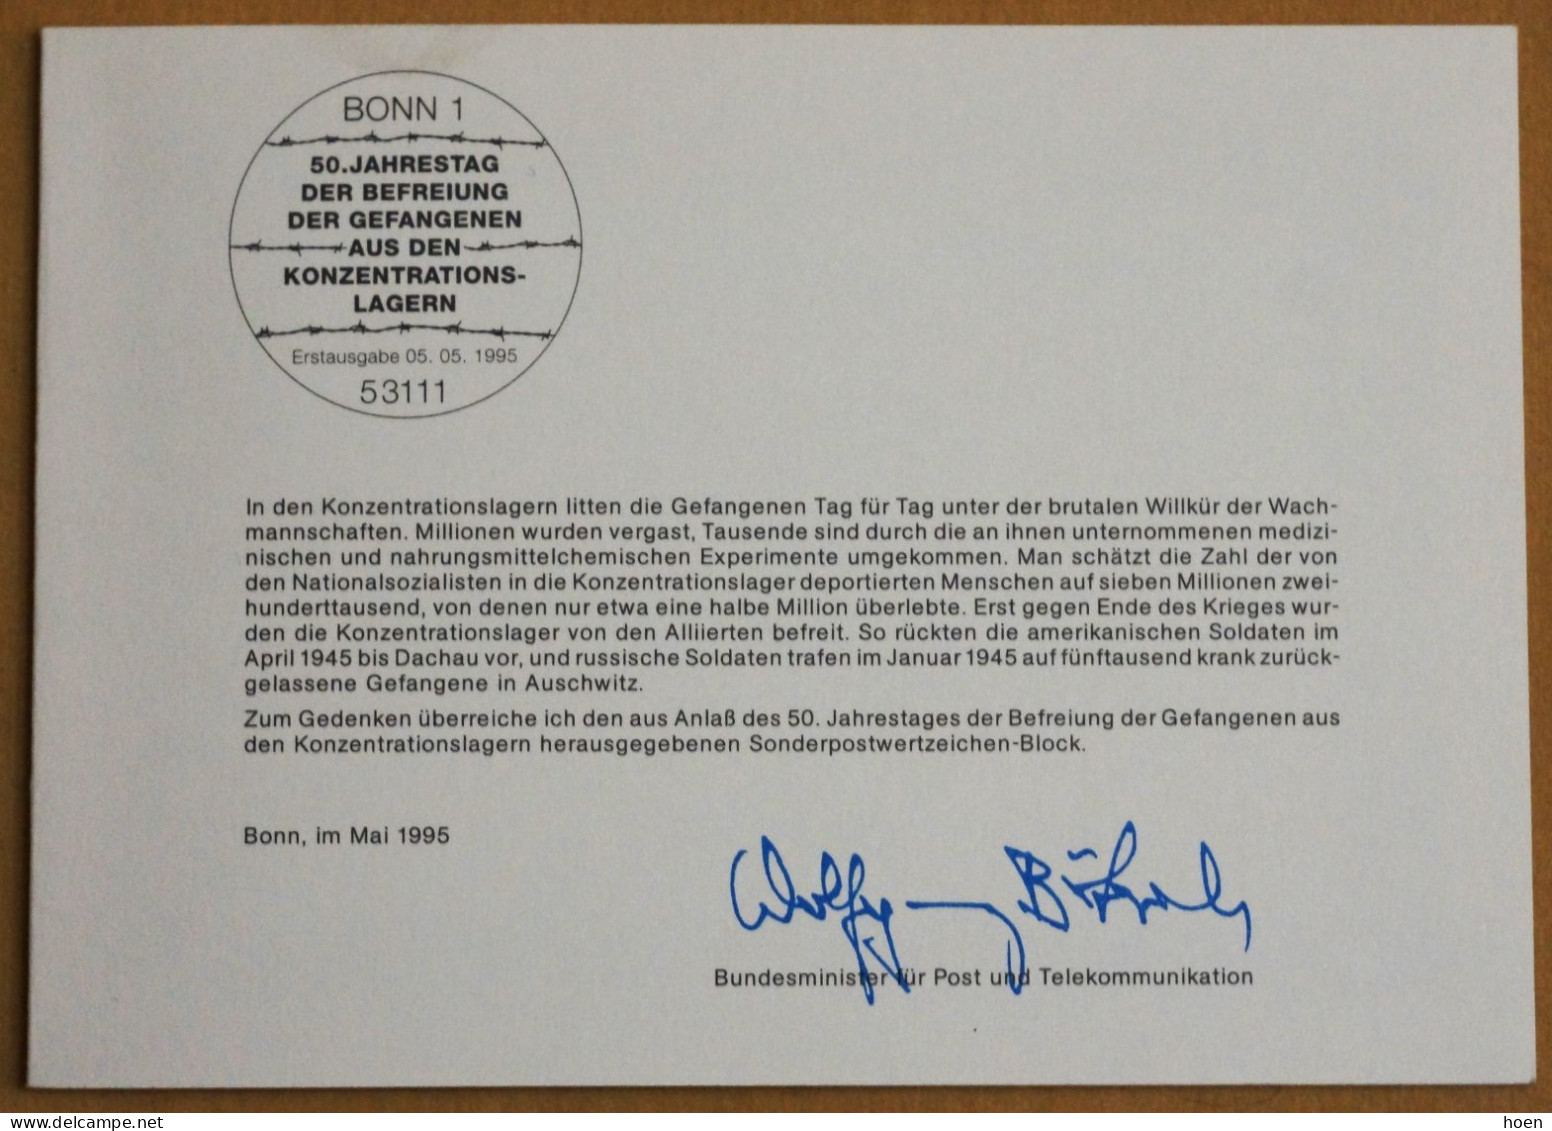 Allemagne - 40 cartes maximum avec oblitération premier jour - émanant du ministre des Postes et Télécommunications